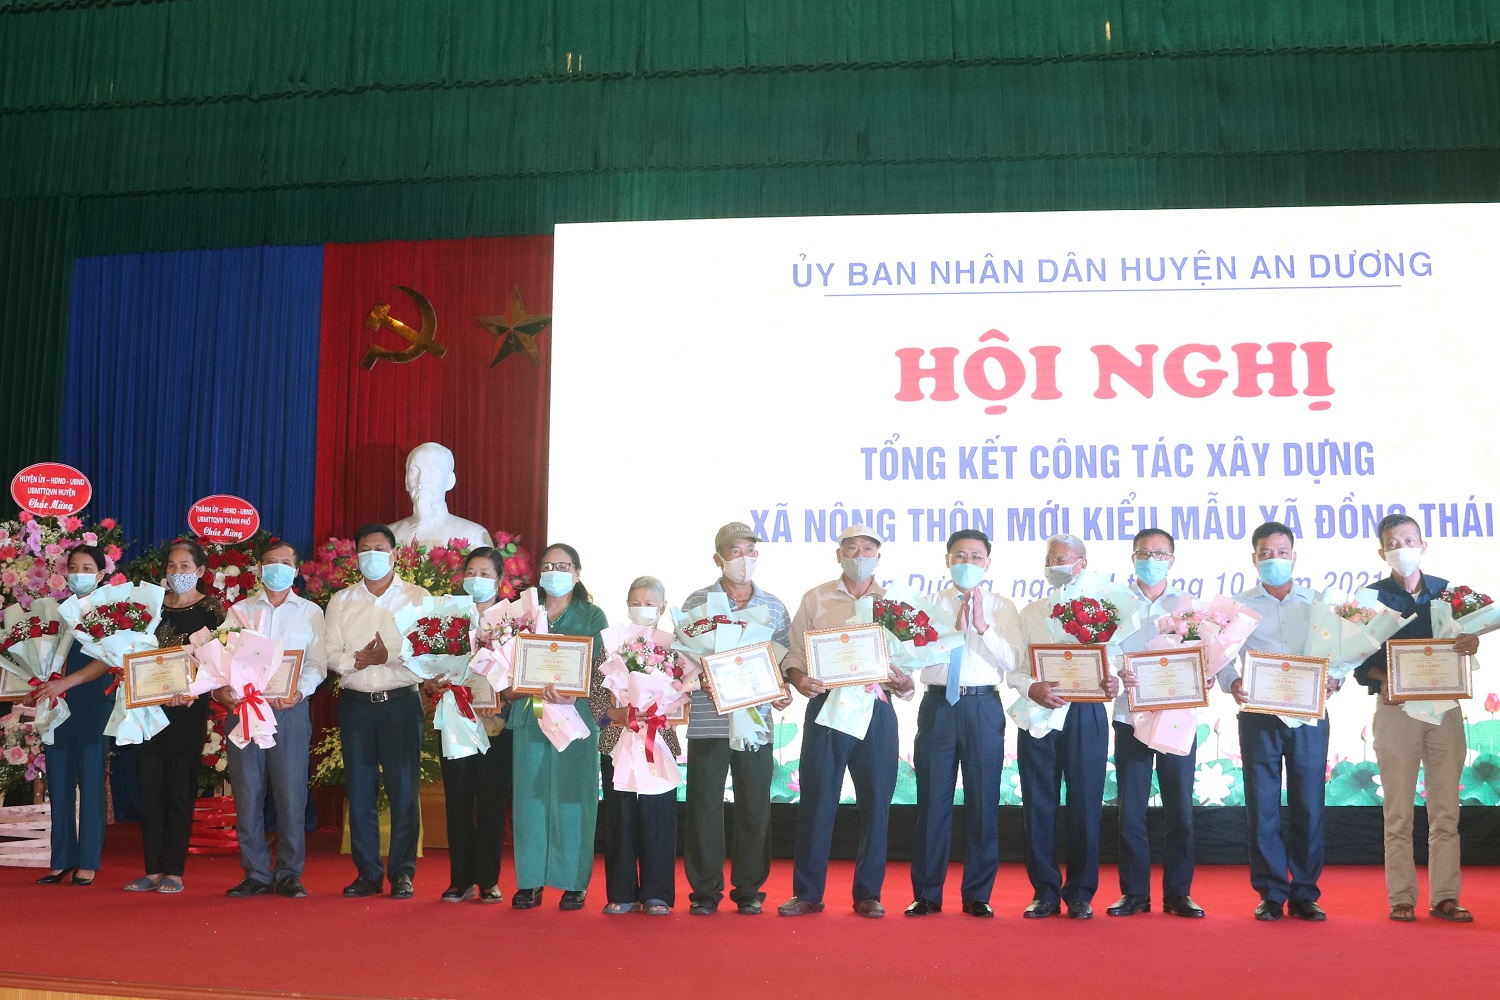 Lãnh đạo huyện An Dương trao giấy khen tặng các tập thể, cá nhân có thành tích xuất sắc trong công tác xây dựng nông thôn mới kiễu mẫu./.